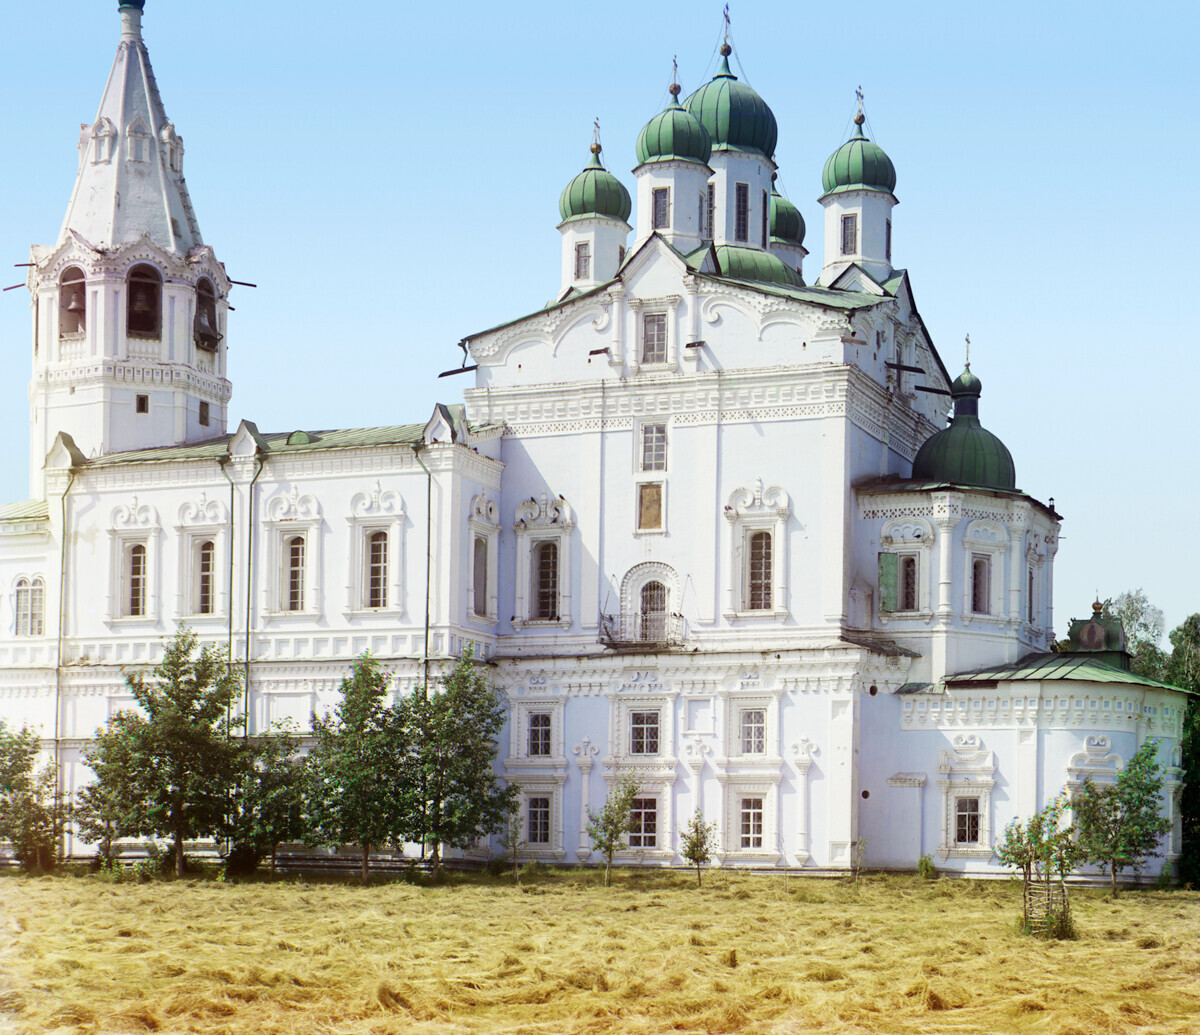 Catedral da Dormição no mosteiro Dolmatov

